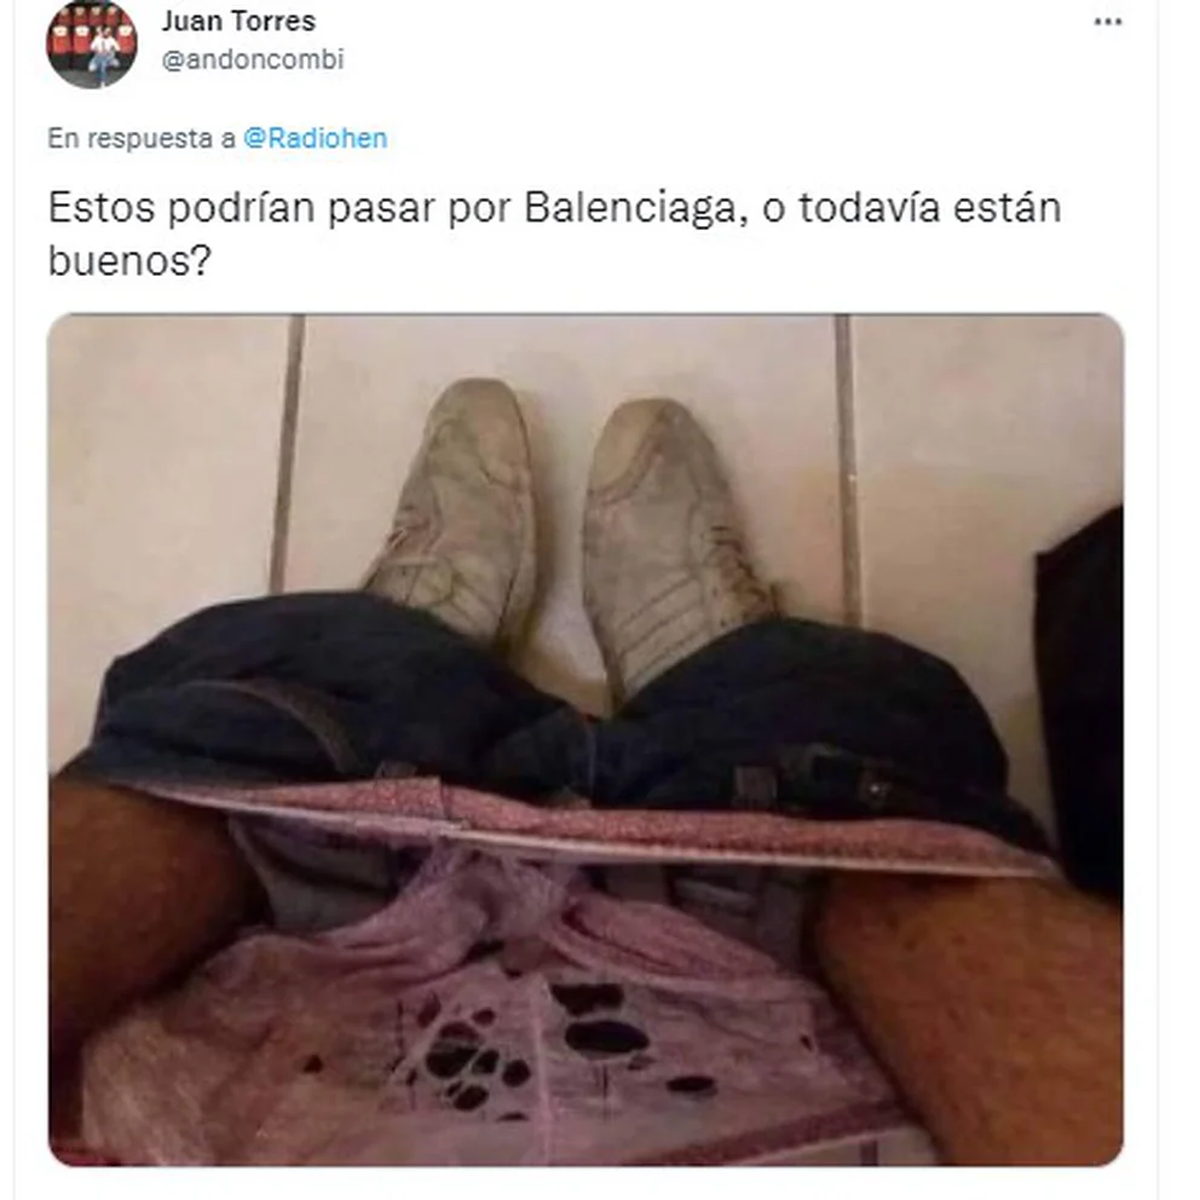 Balenciaga lanzo una nueva de zapatillas que provocó polémica y muchos memes